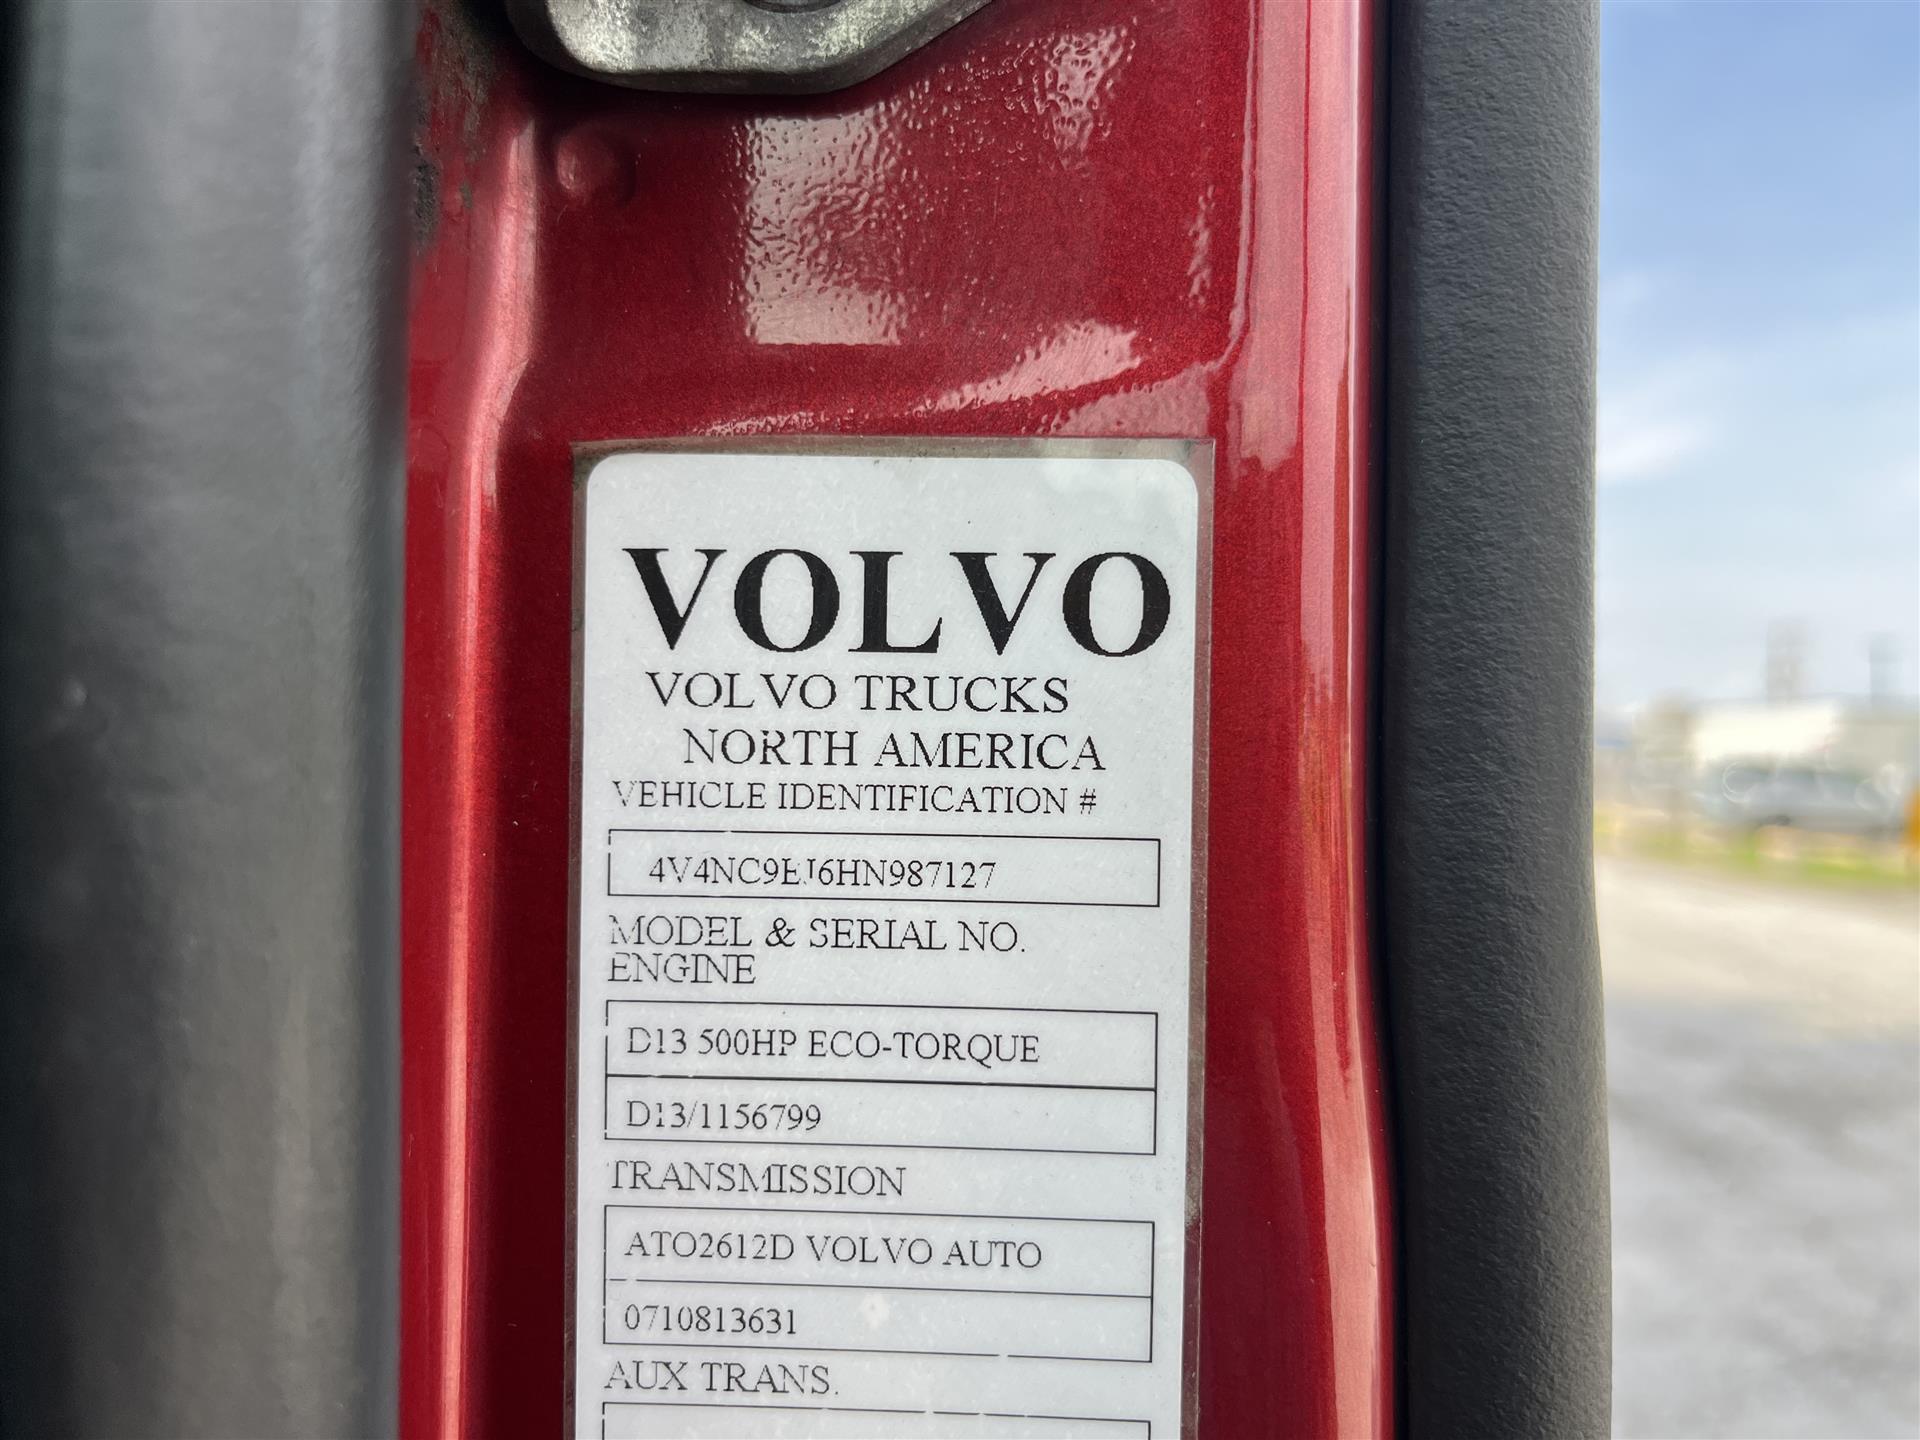 2017 Volvo VNL670 – 987127